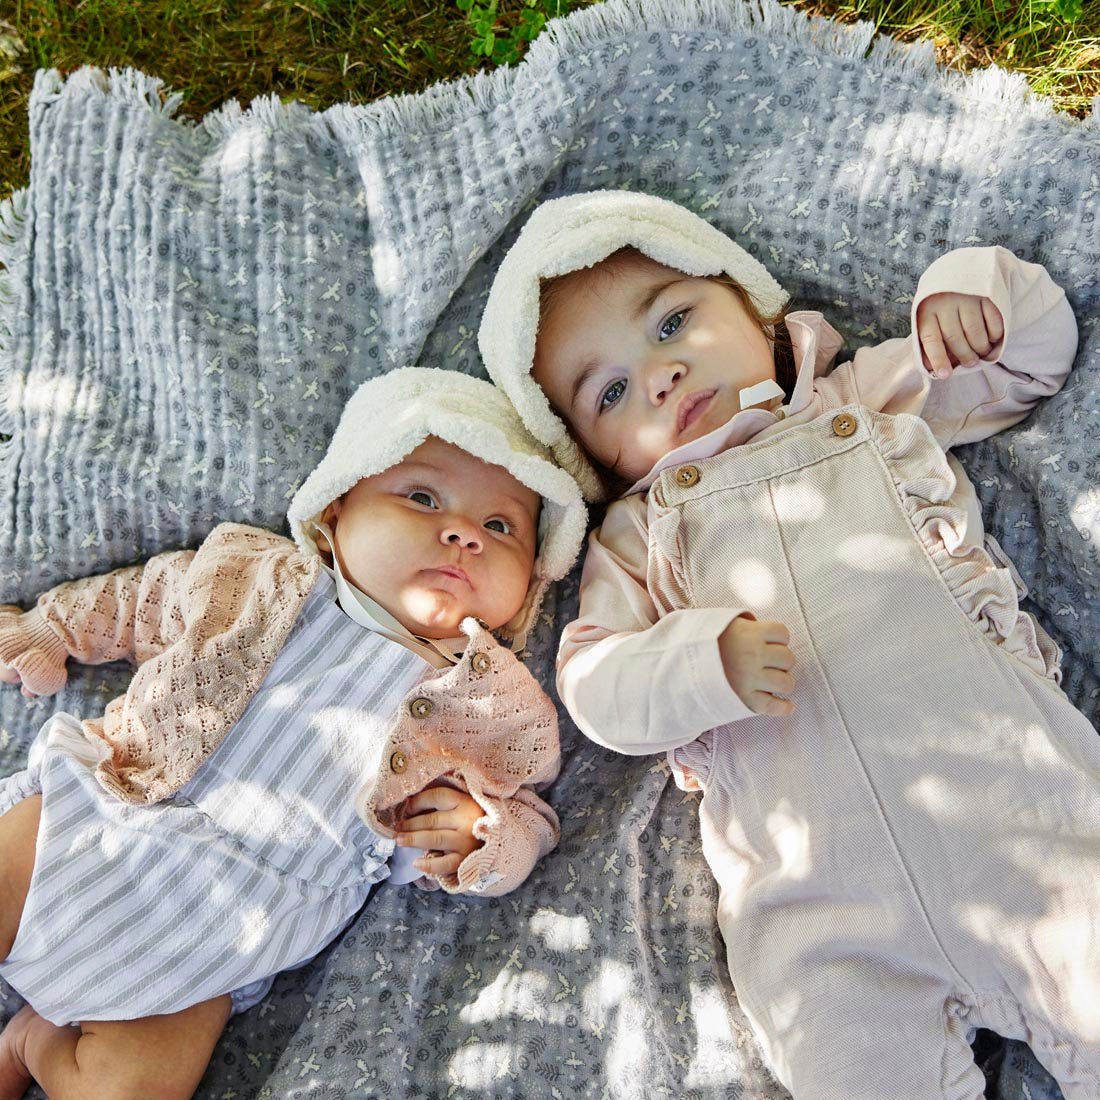 Détails Elodie - Baby Bonnet Hat - Bouclé blanc - 6-12 mois